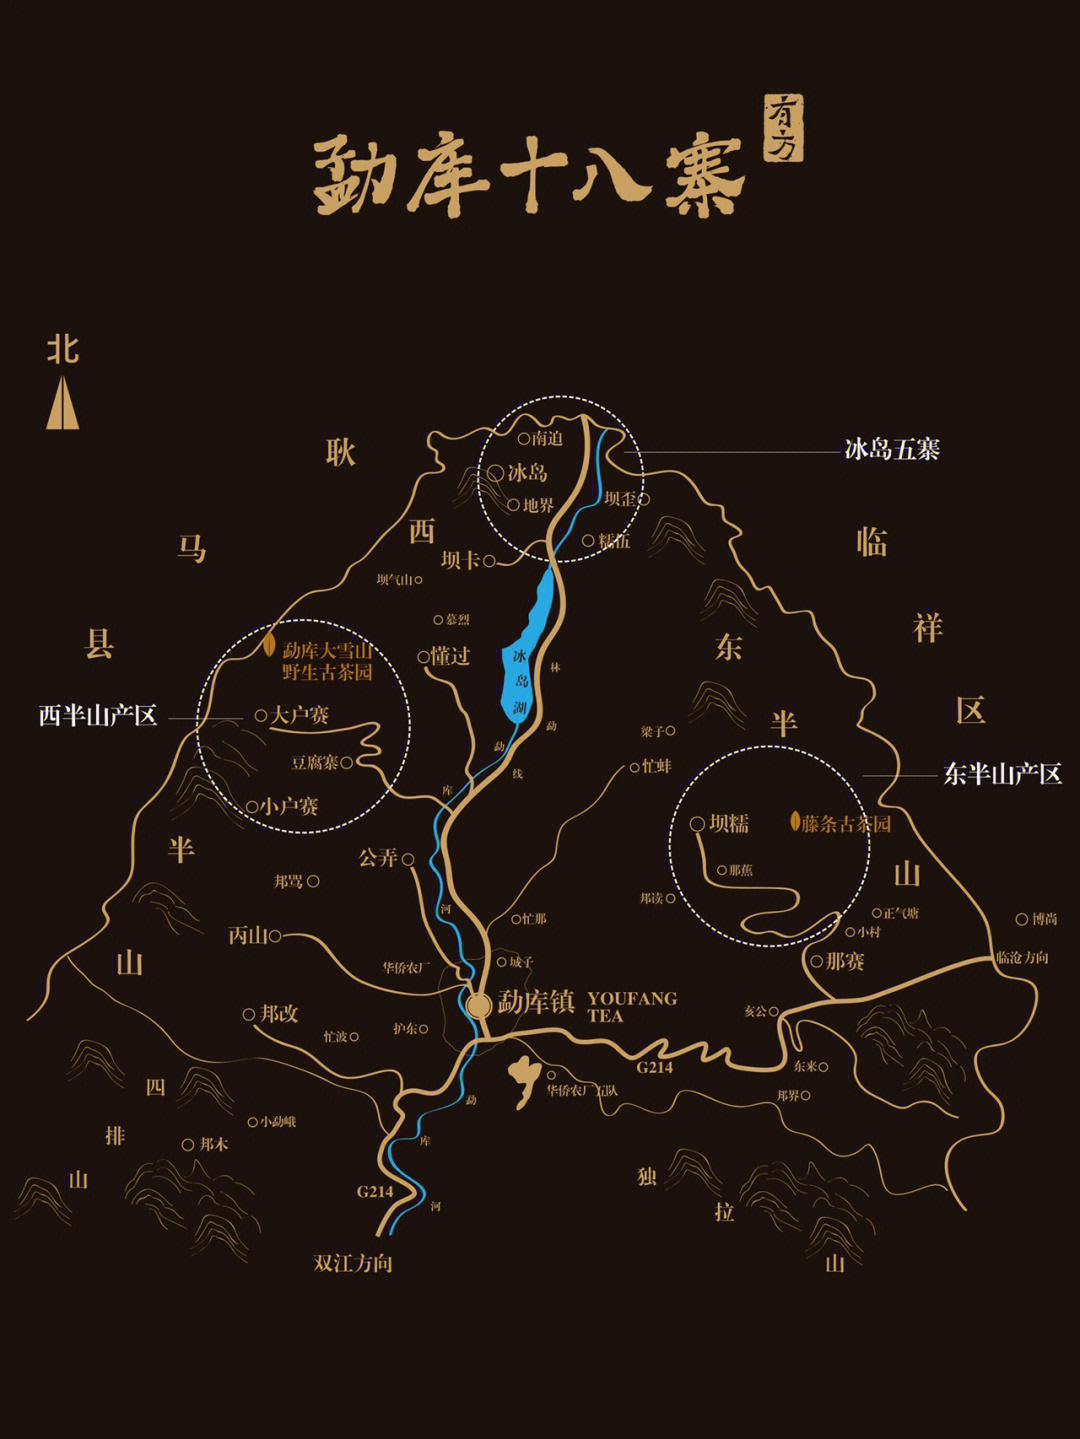 勐库18寨地图图片